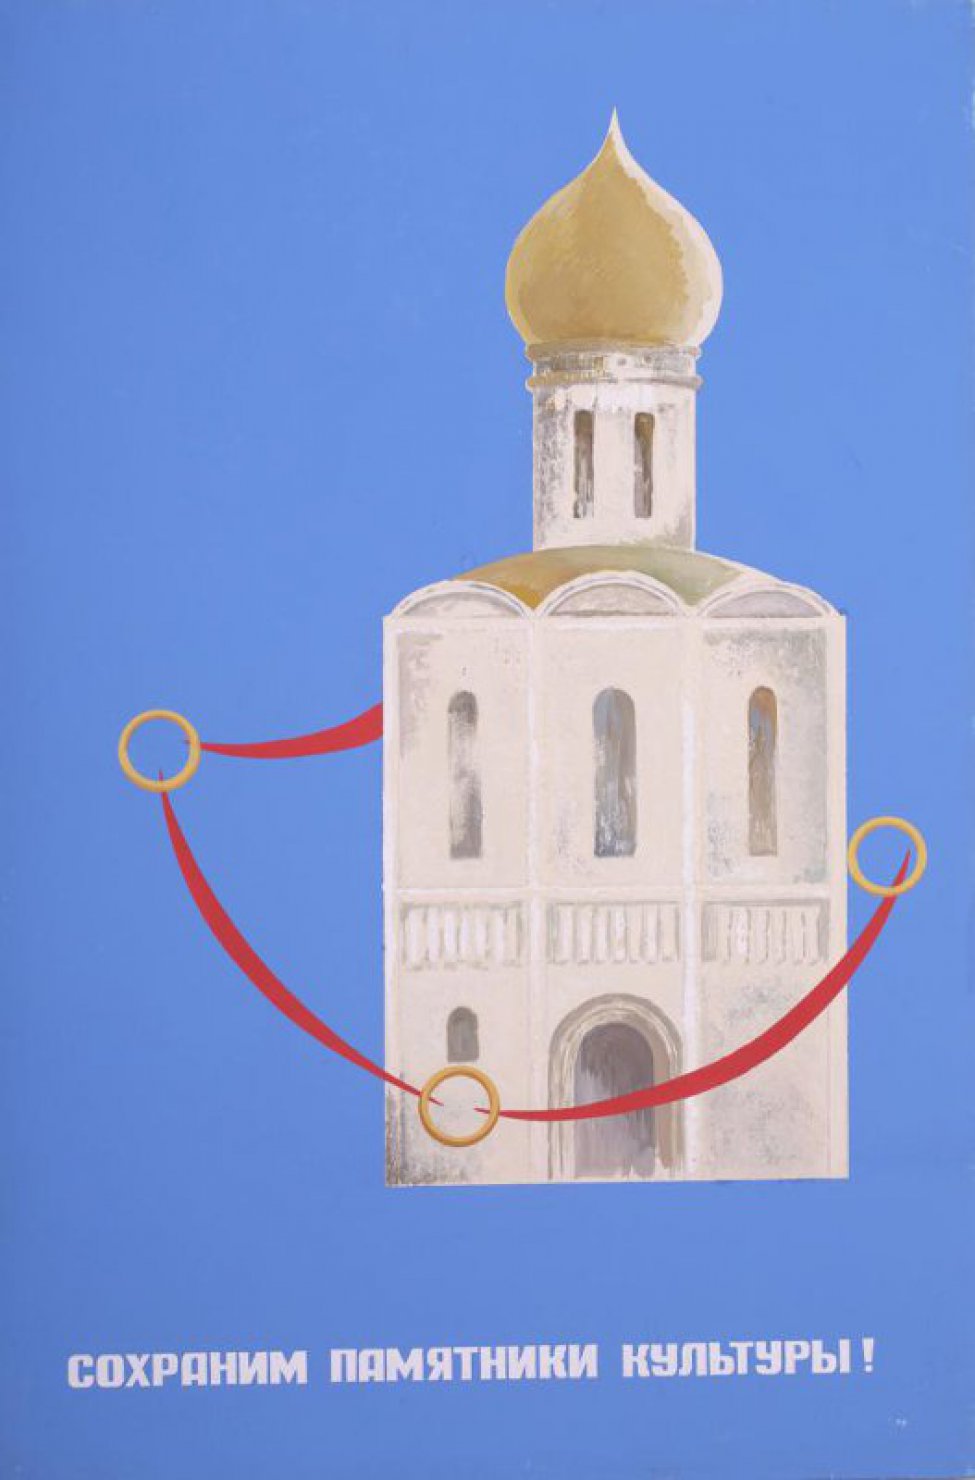 На голубом фоне изображена однокупольная церковь. Под изображением текст: "Сохраним памятники культуры".